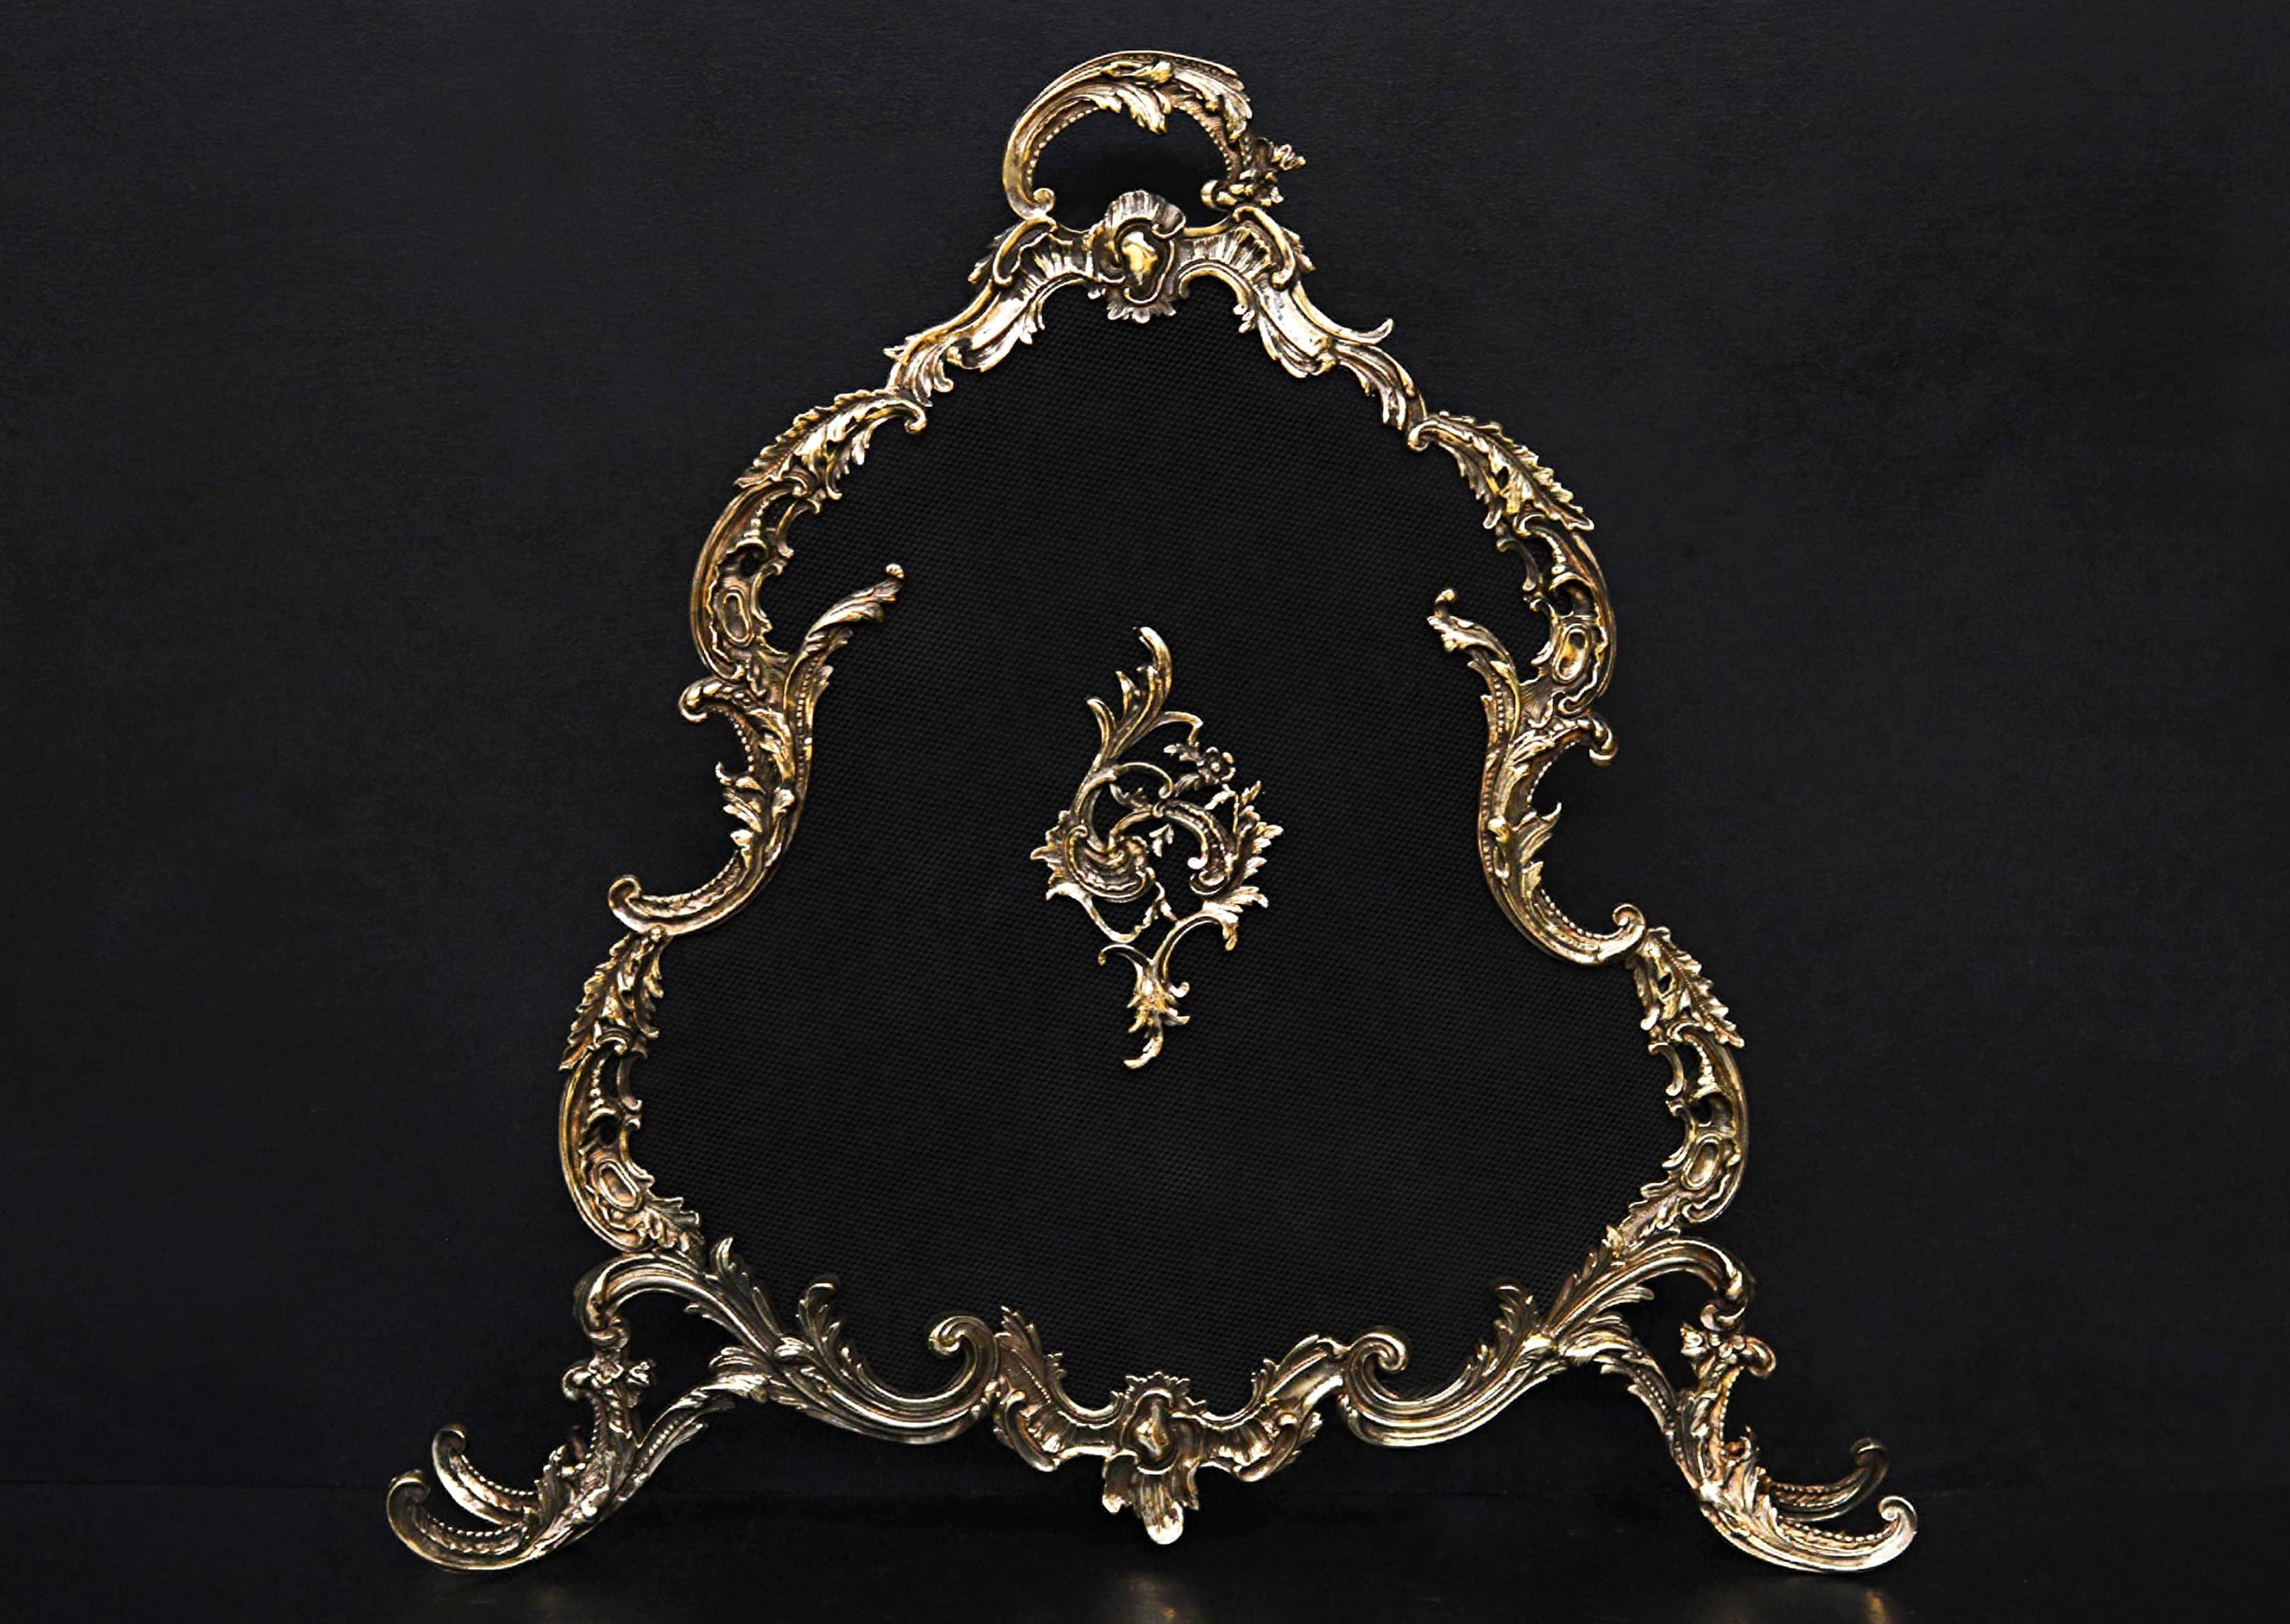 Ein französischer Messingkamin im Stil von Ludwig XV. mit einer durchgehenden Form aus Blättern und Schnörkeln. Das Geflecht ist mit passendem Dekor verziert. 19. Jahrhundert.

Höhe: 760 mm 29